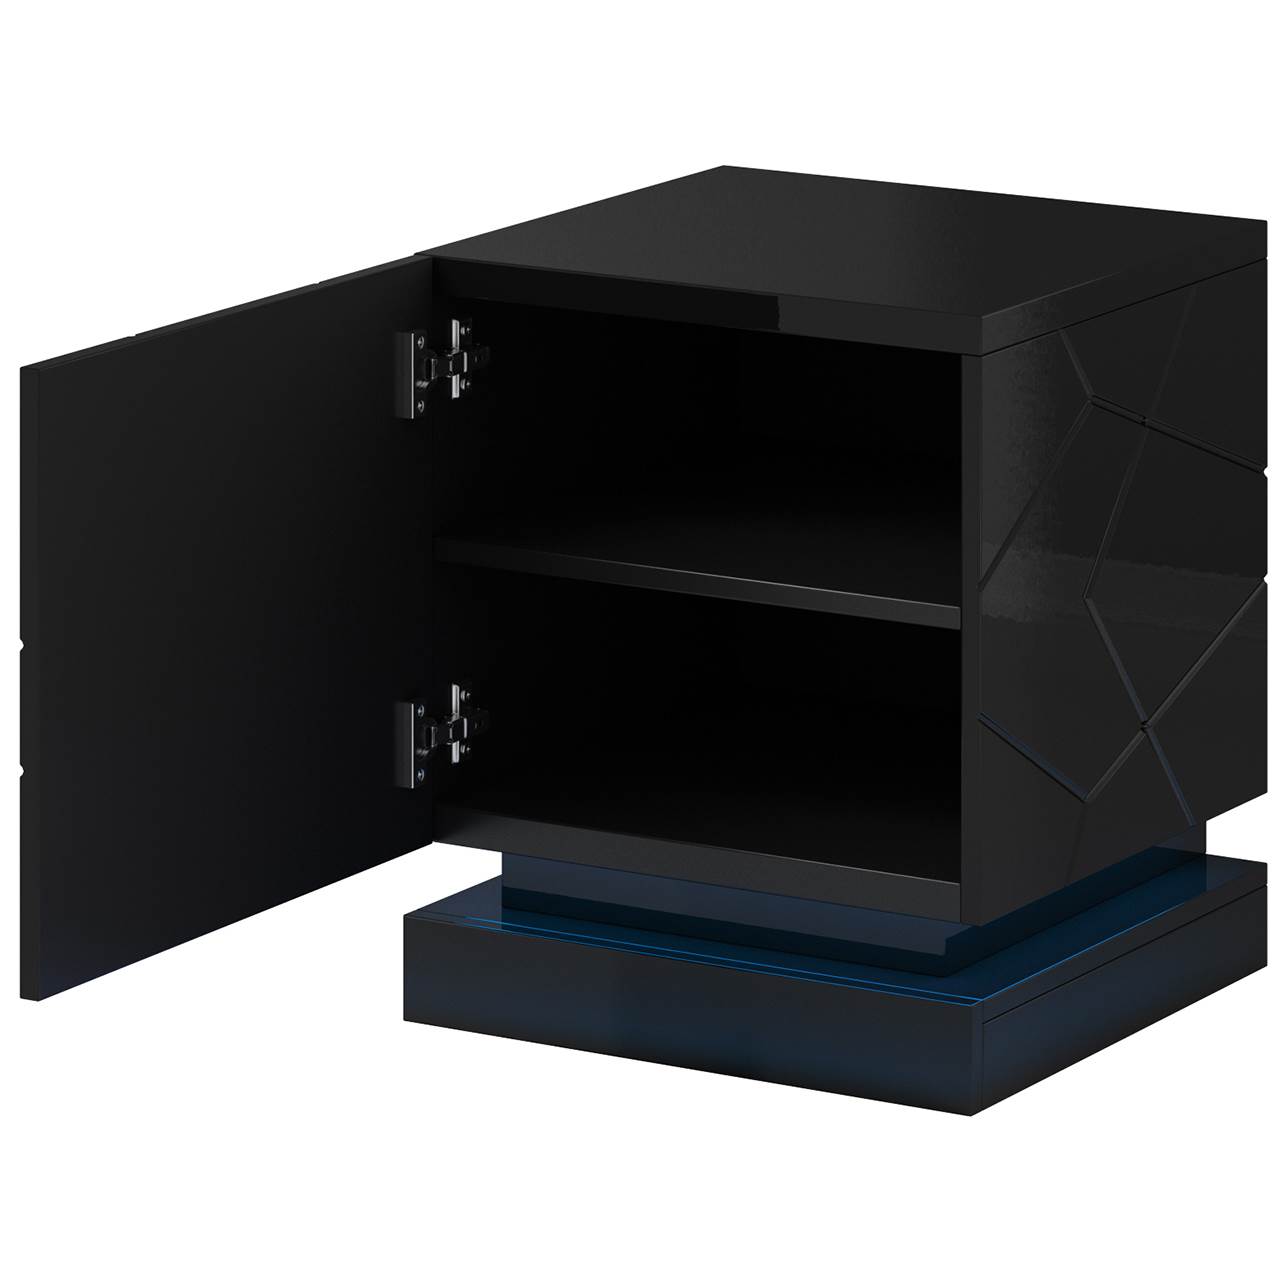 Bedside cabinets QIU 2pcs. black gloss